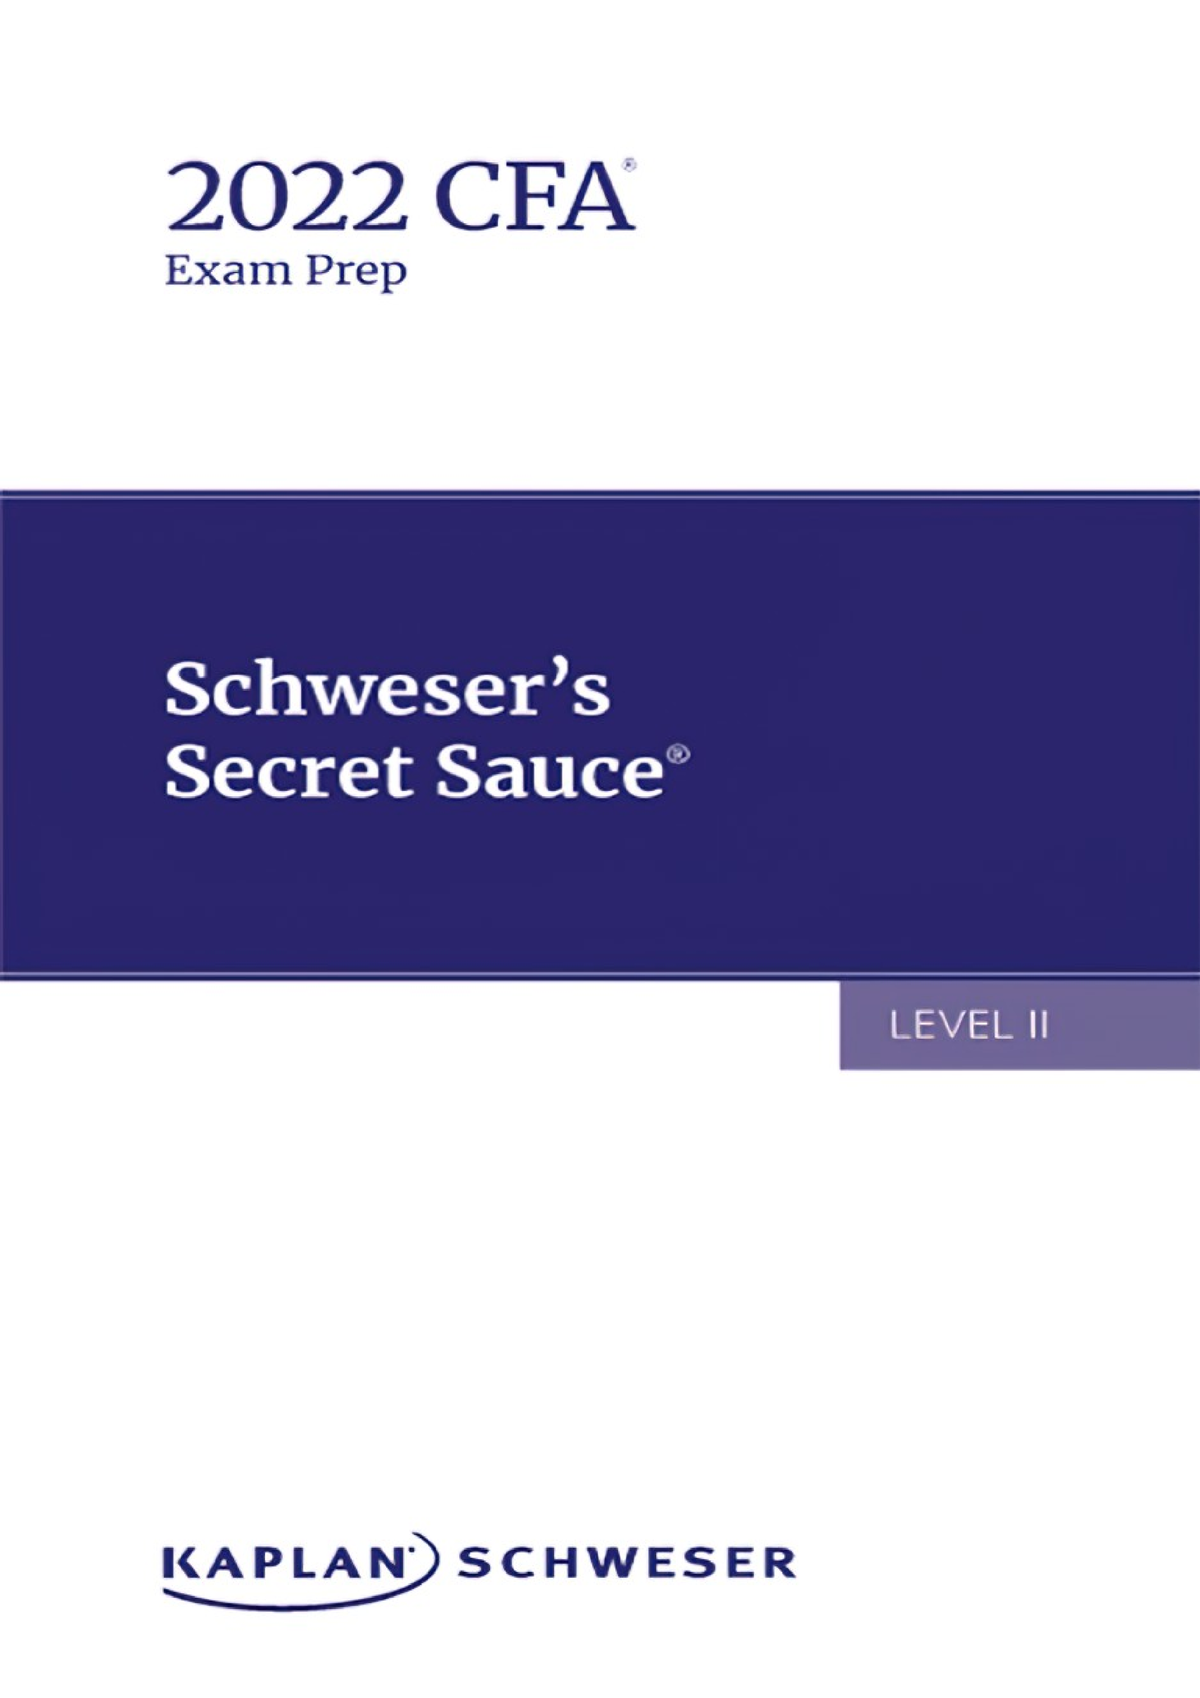 2022 CFA Level 2 SSS - Summary from Schweser - Schweser's Secret